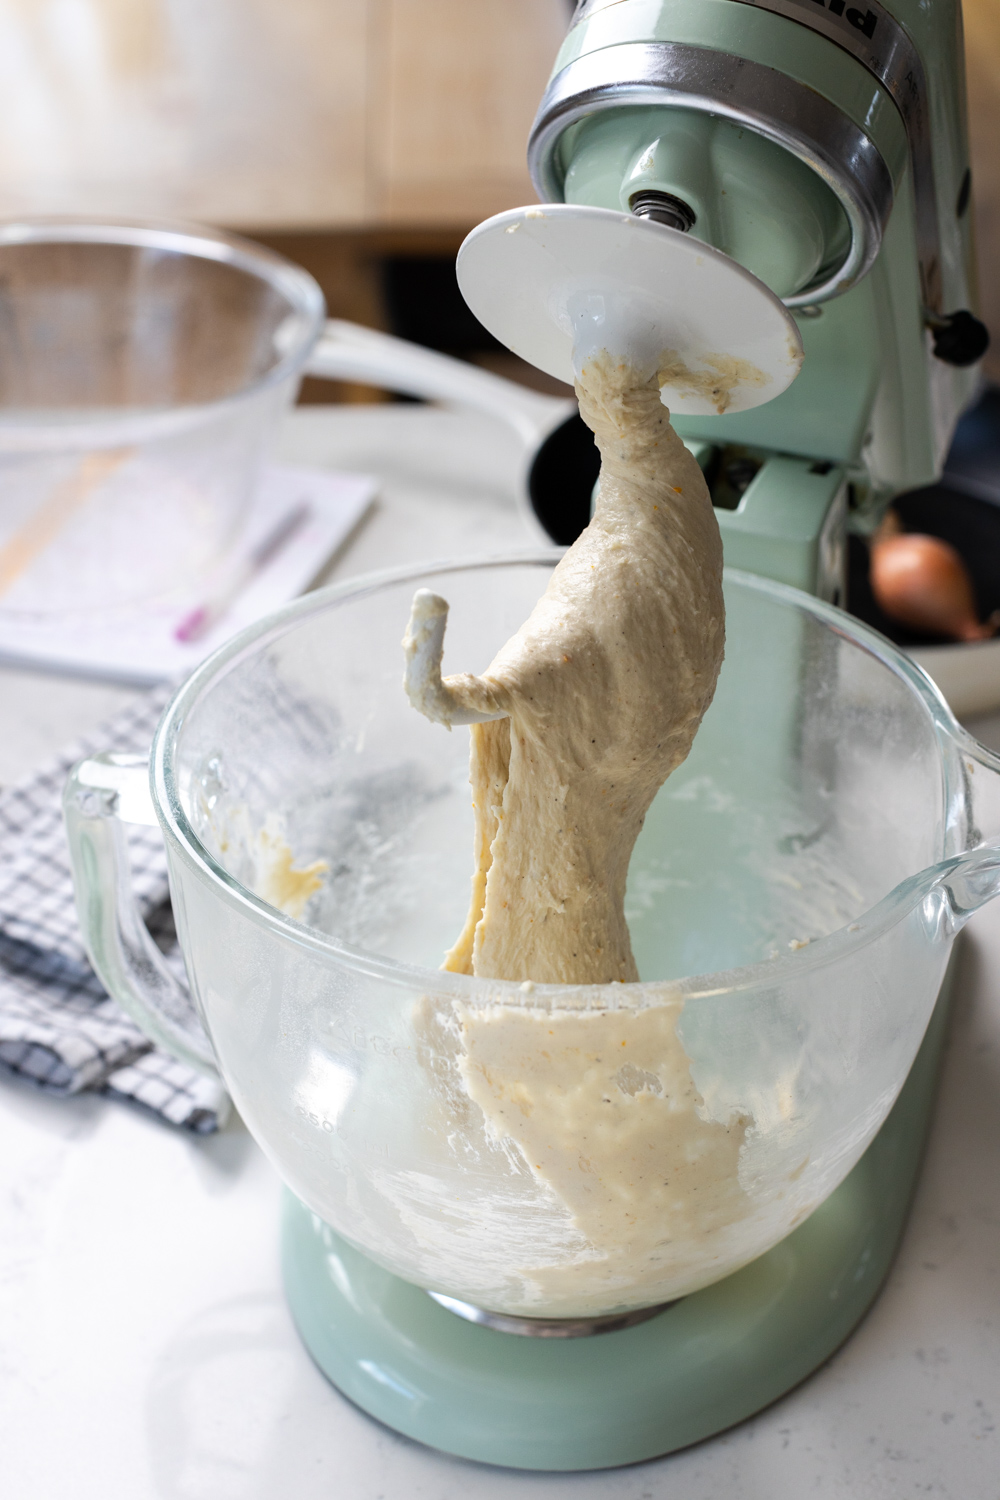 mixing focaccia dough